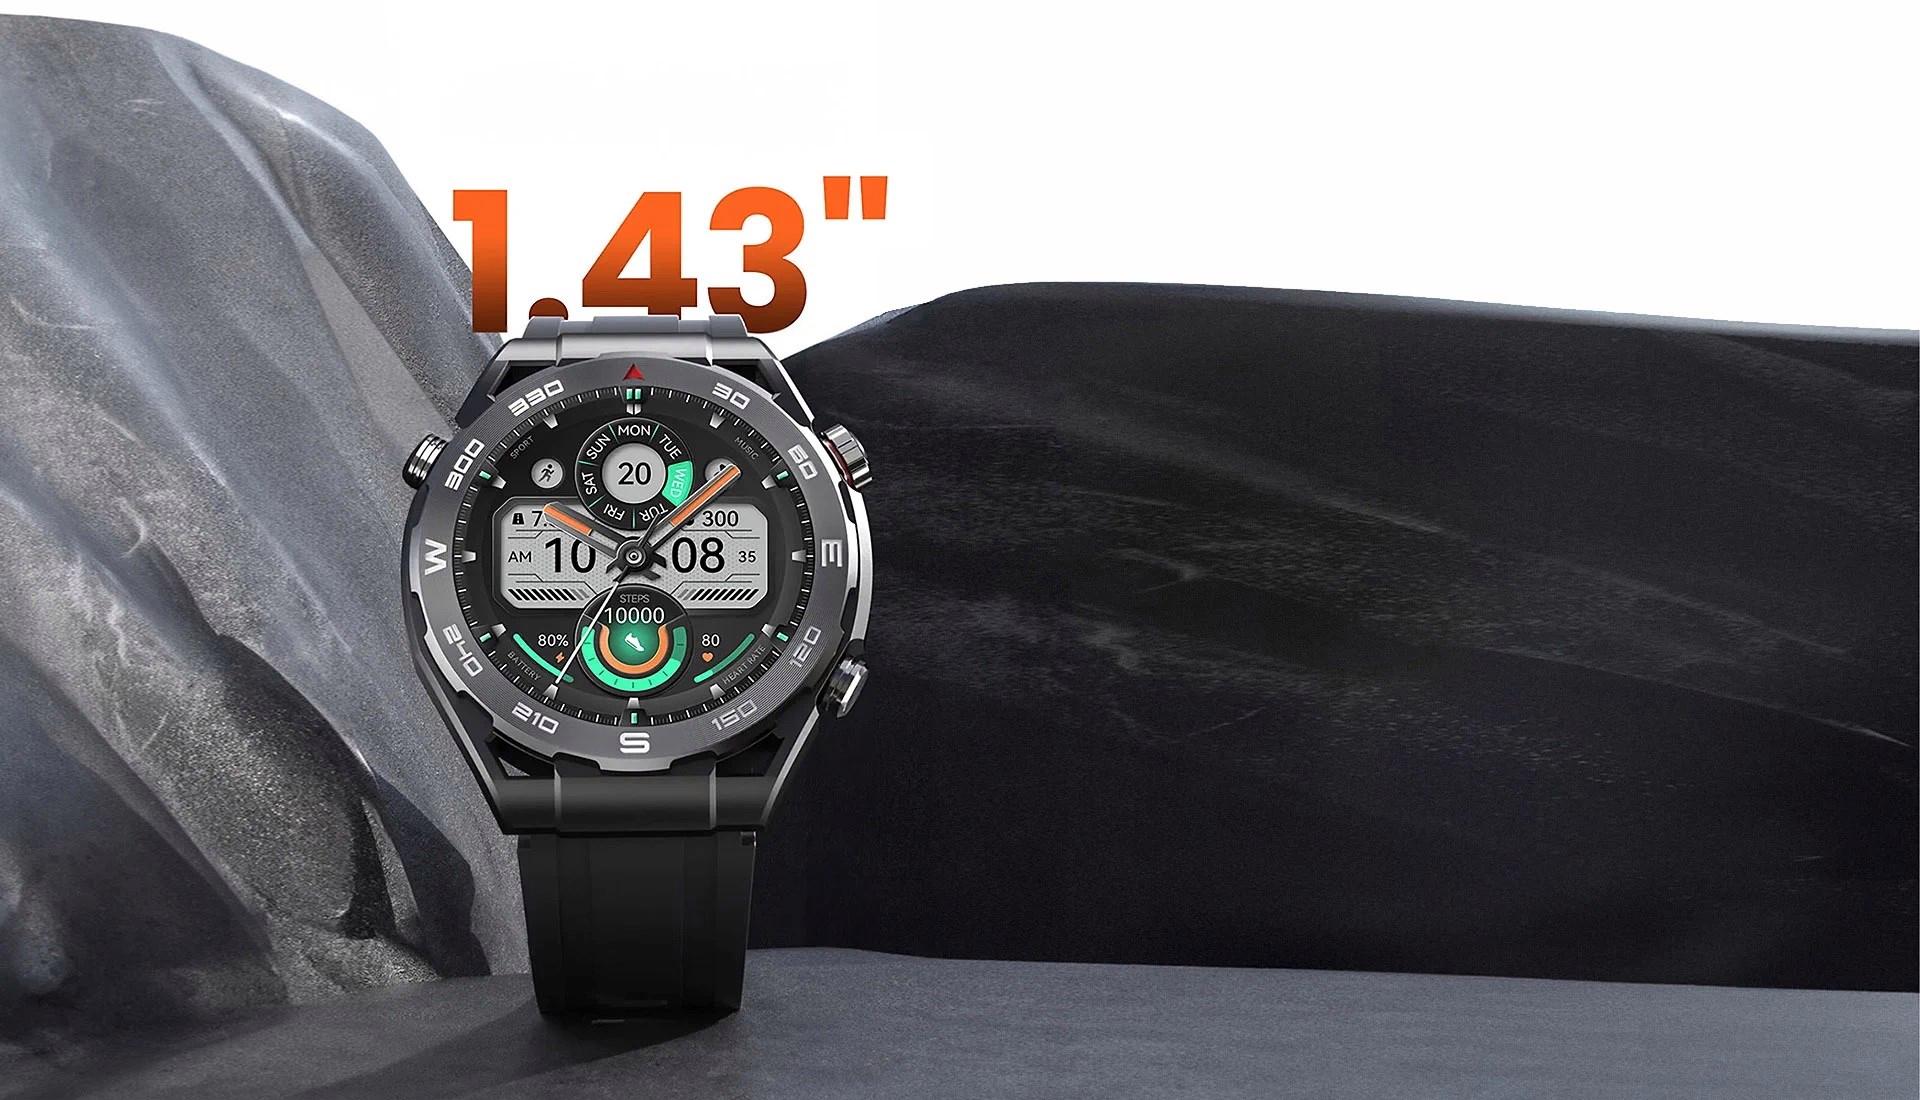 Bu fiyata yok satar: Haylou Watch R8 tanıtıldı